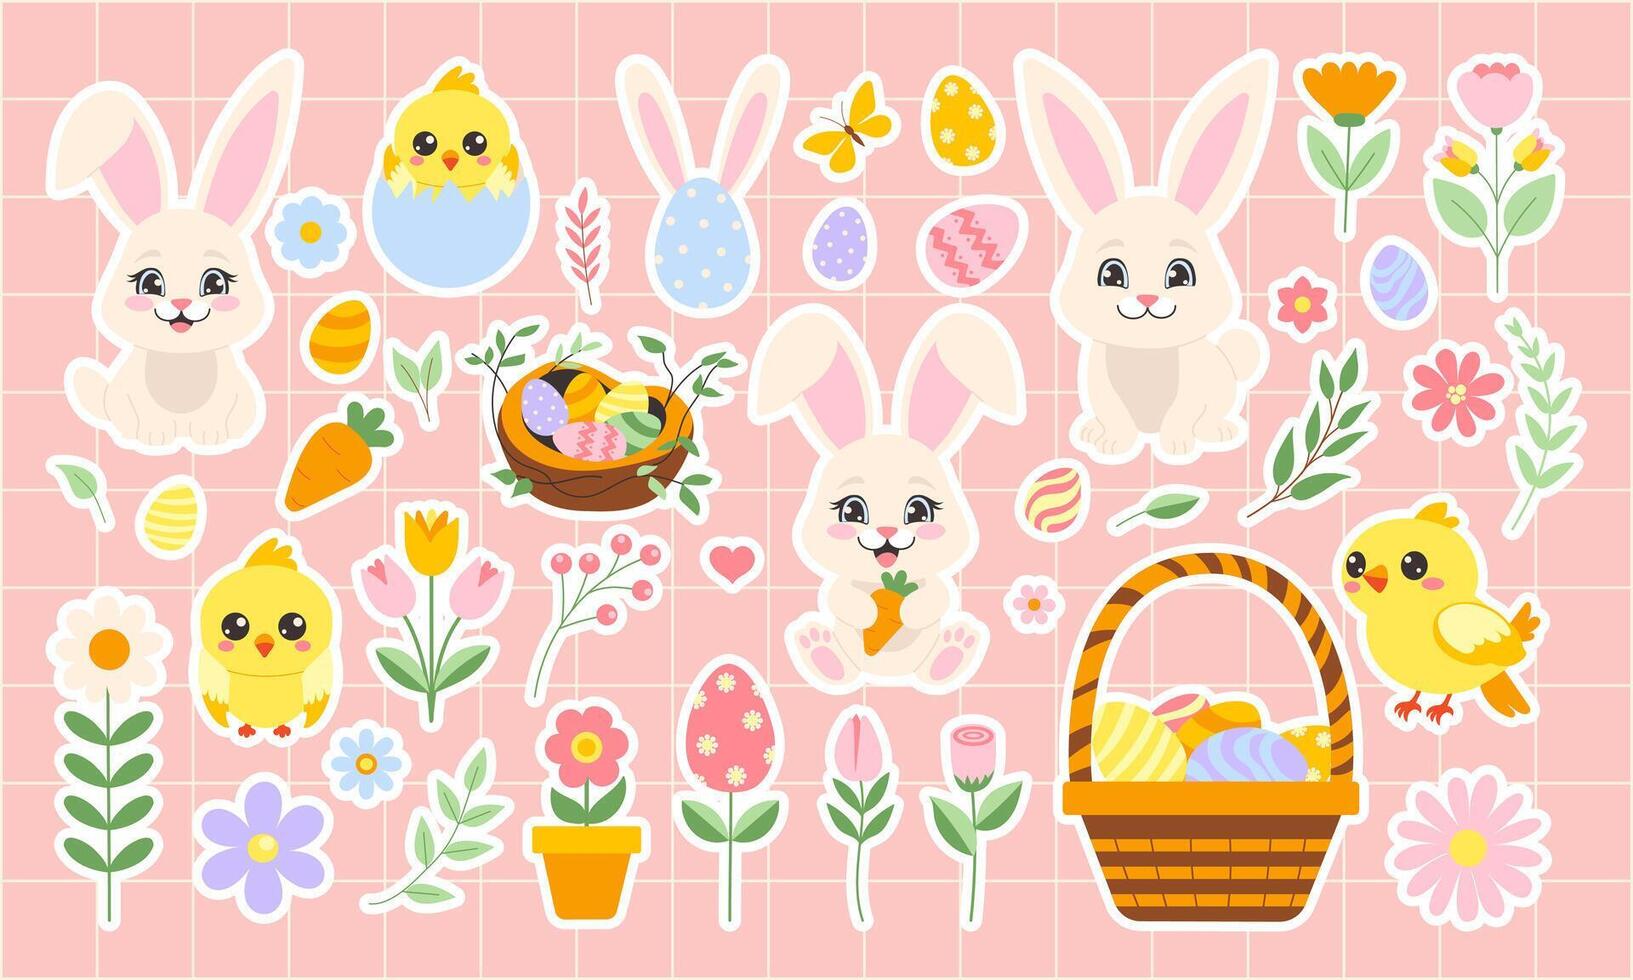 Pâques autocollants ensemble avec lapin, œufs, fleurs, panier. vecteur illustration